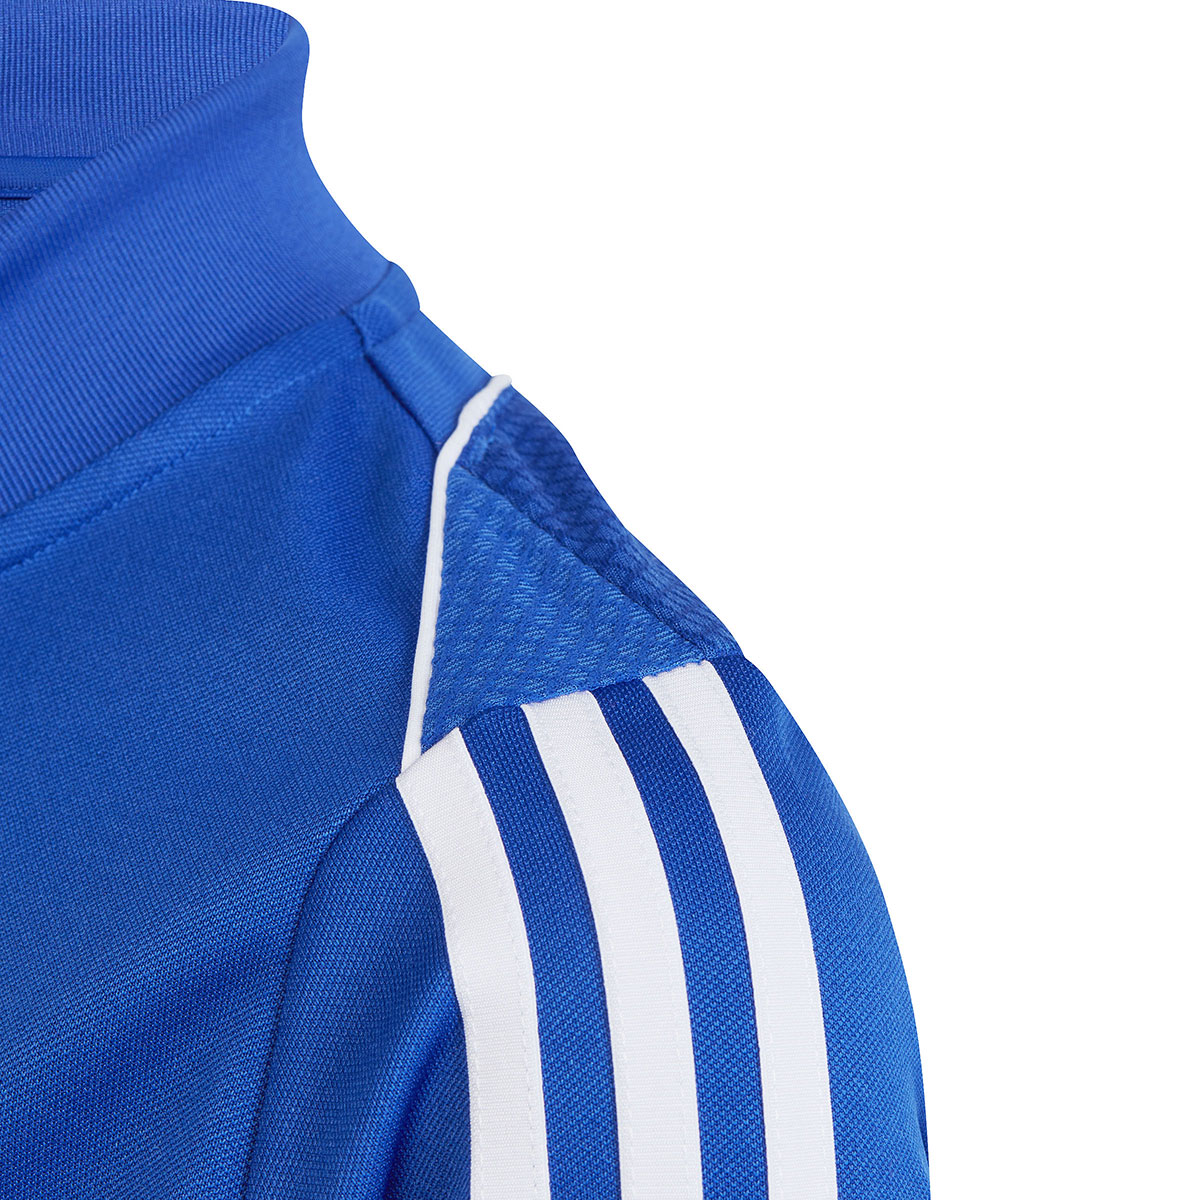 Adidas Kinder Trainingsjacke Tiro 23 blau